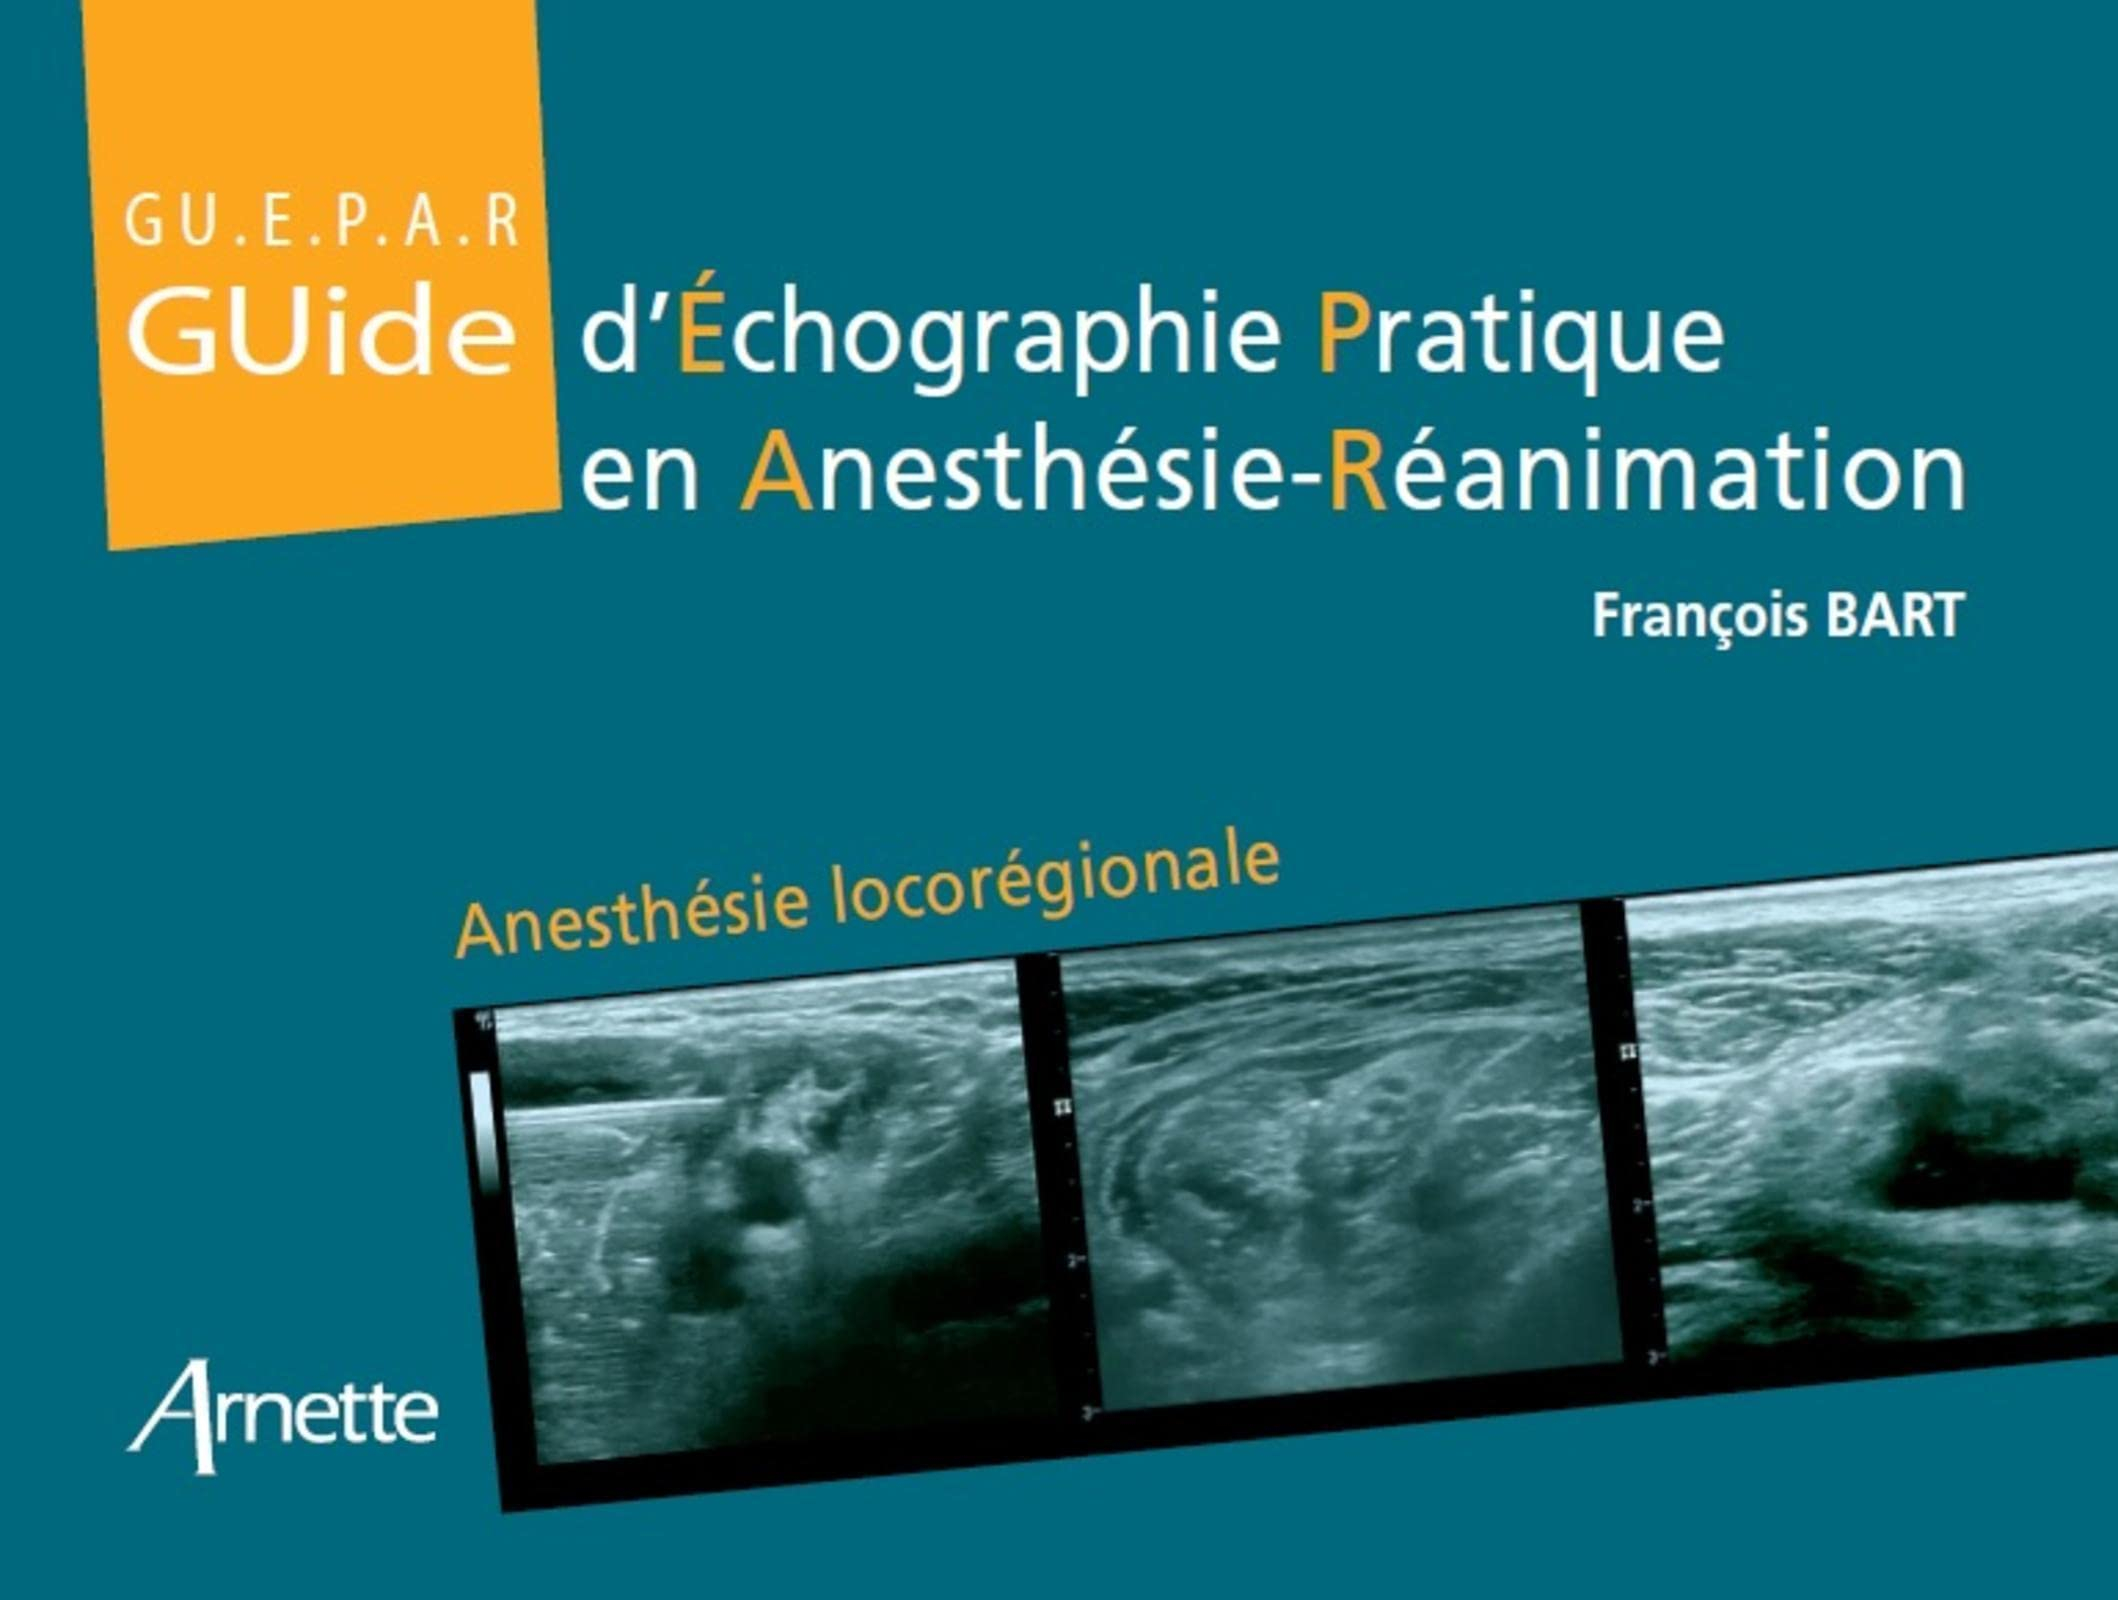 Guide d'échographie pratique en anesthésie-réanimation : anesthésie locorégionale